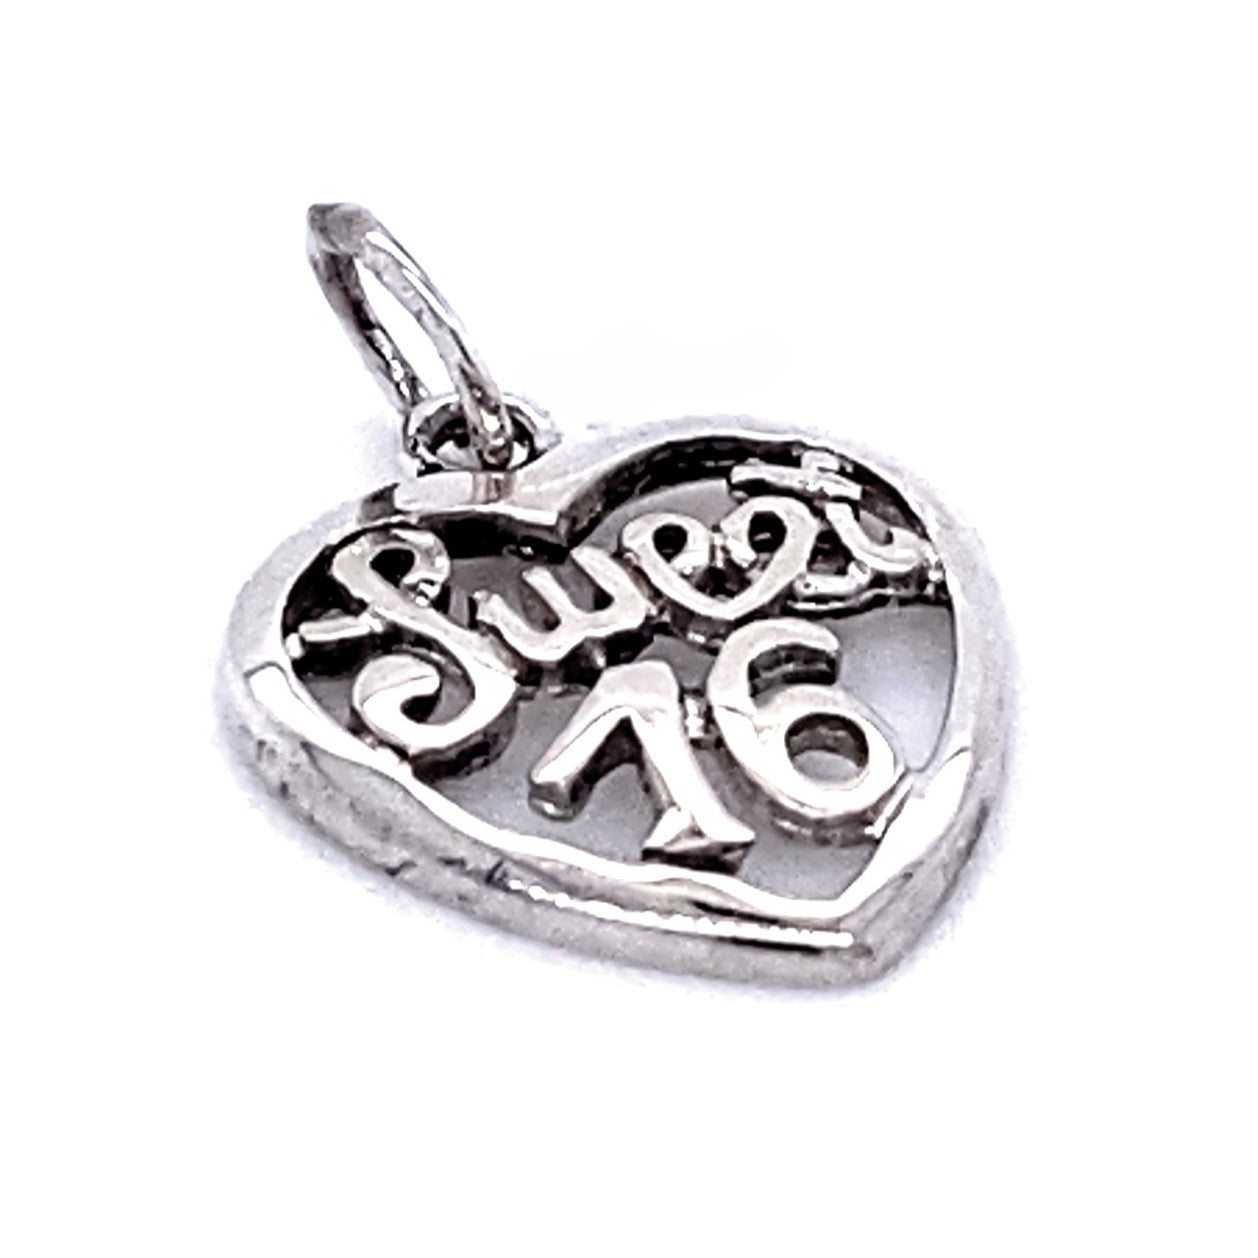 A "Sweet 16" In Open Heart Pendant with the words "Sweet 16" elegantly written inside.